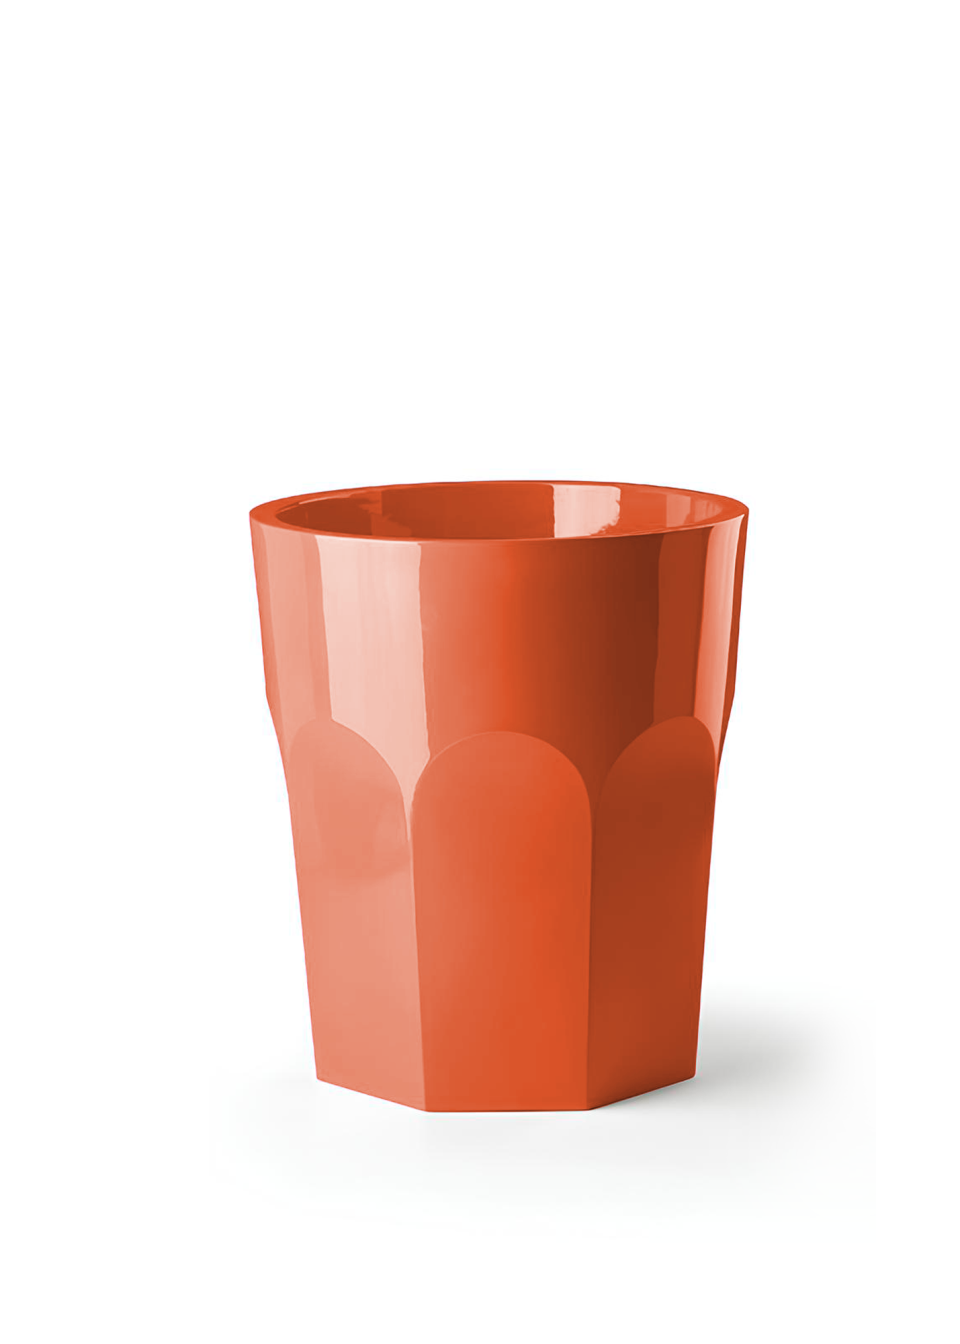 pot de fleurs exterieur xxl, grand pot de fleur pour exterieur orange pour terrasses lounge sur fondd blanc